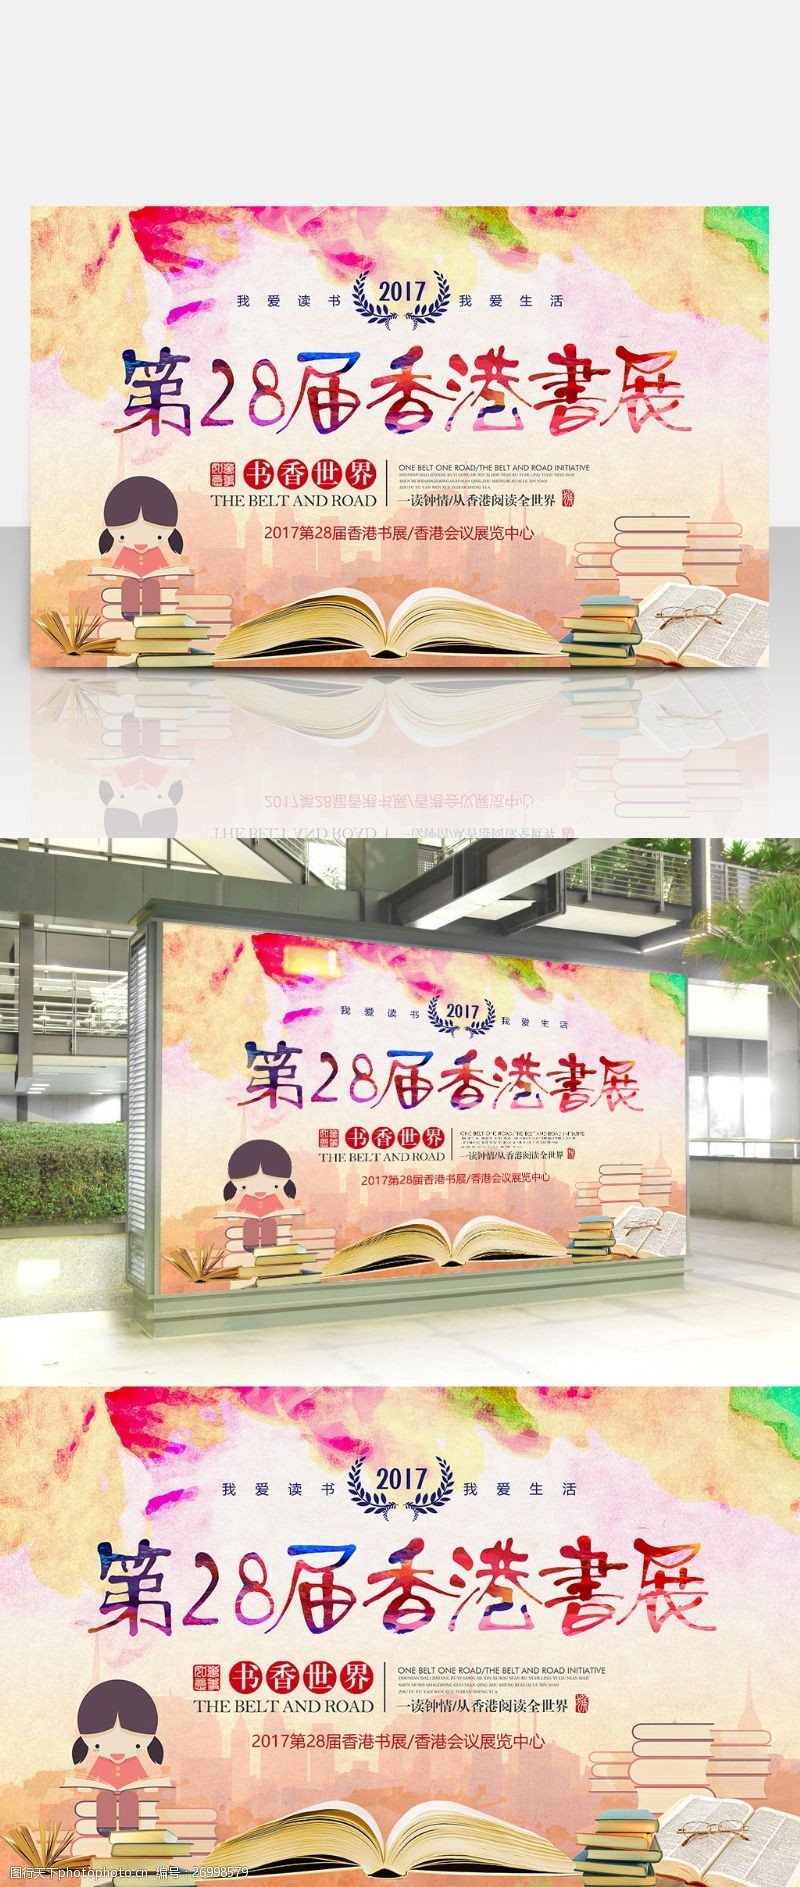 第二届2017第28届香港书展宣传展板设计